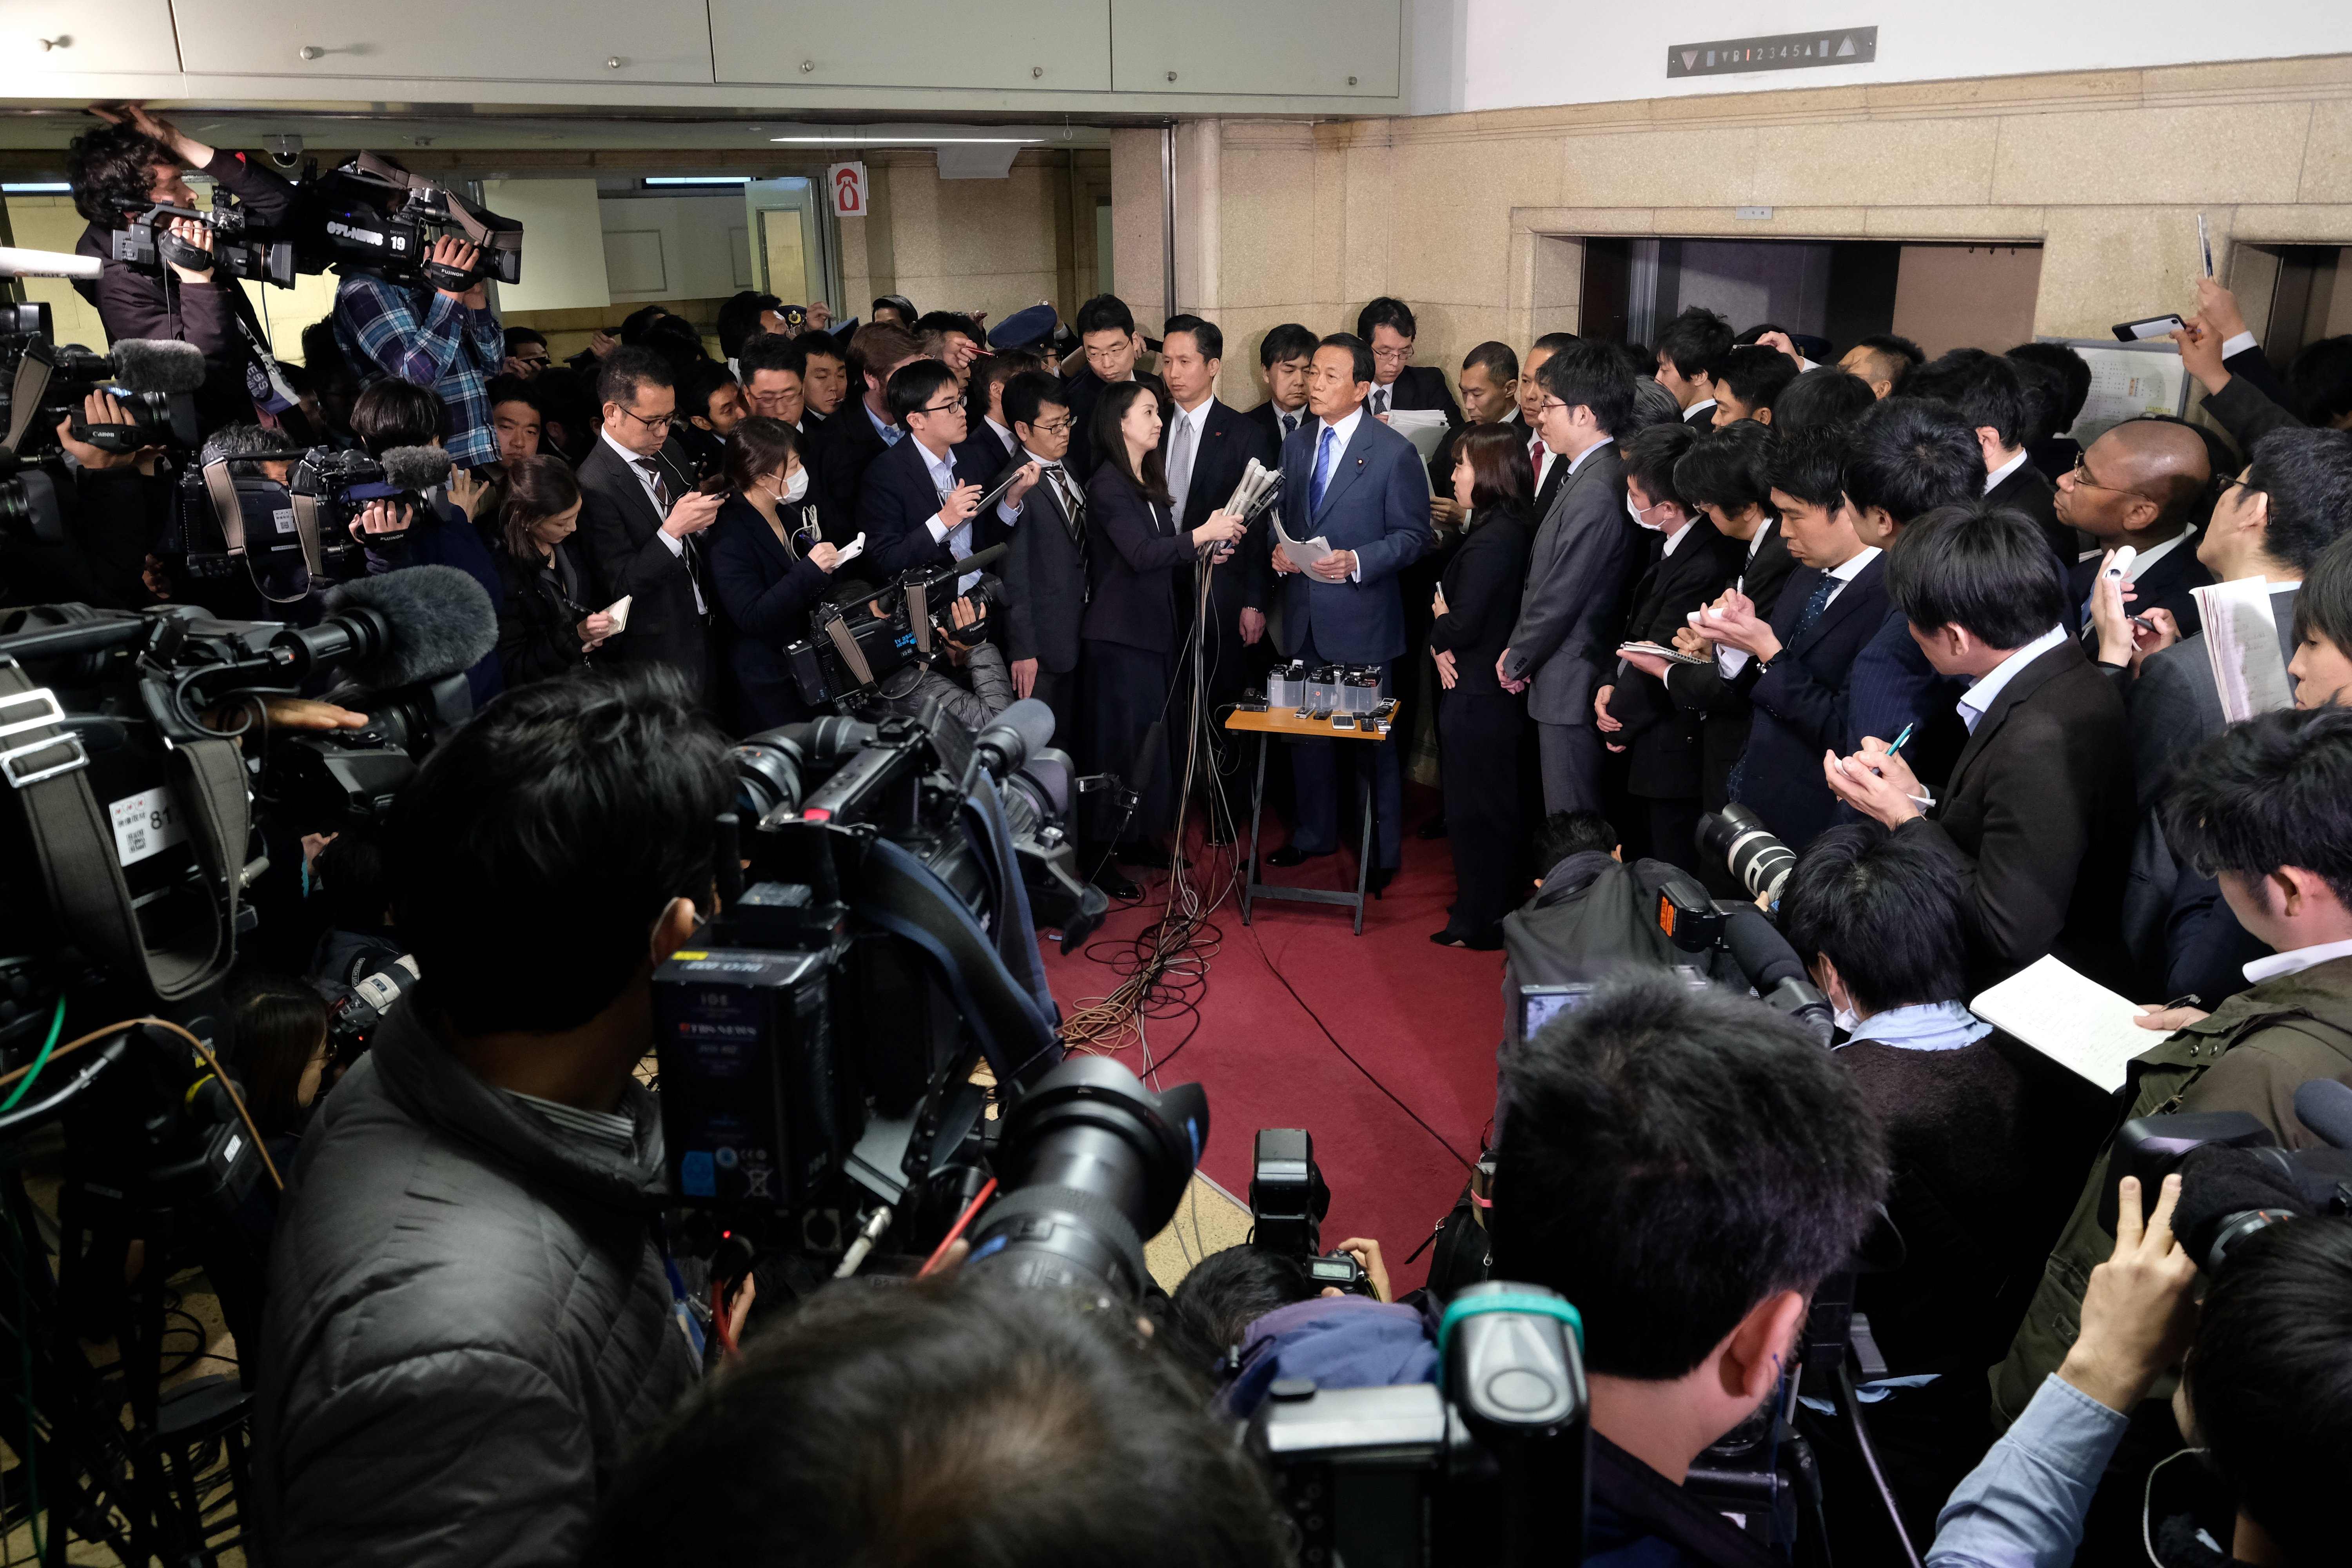 وسائل الإعلام تتابع تصريحات وزير المالية اليابانى بشأن قضية الفساد